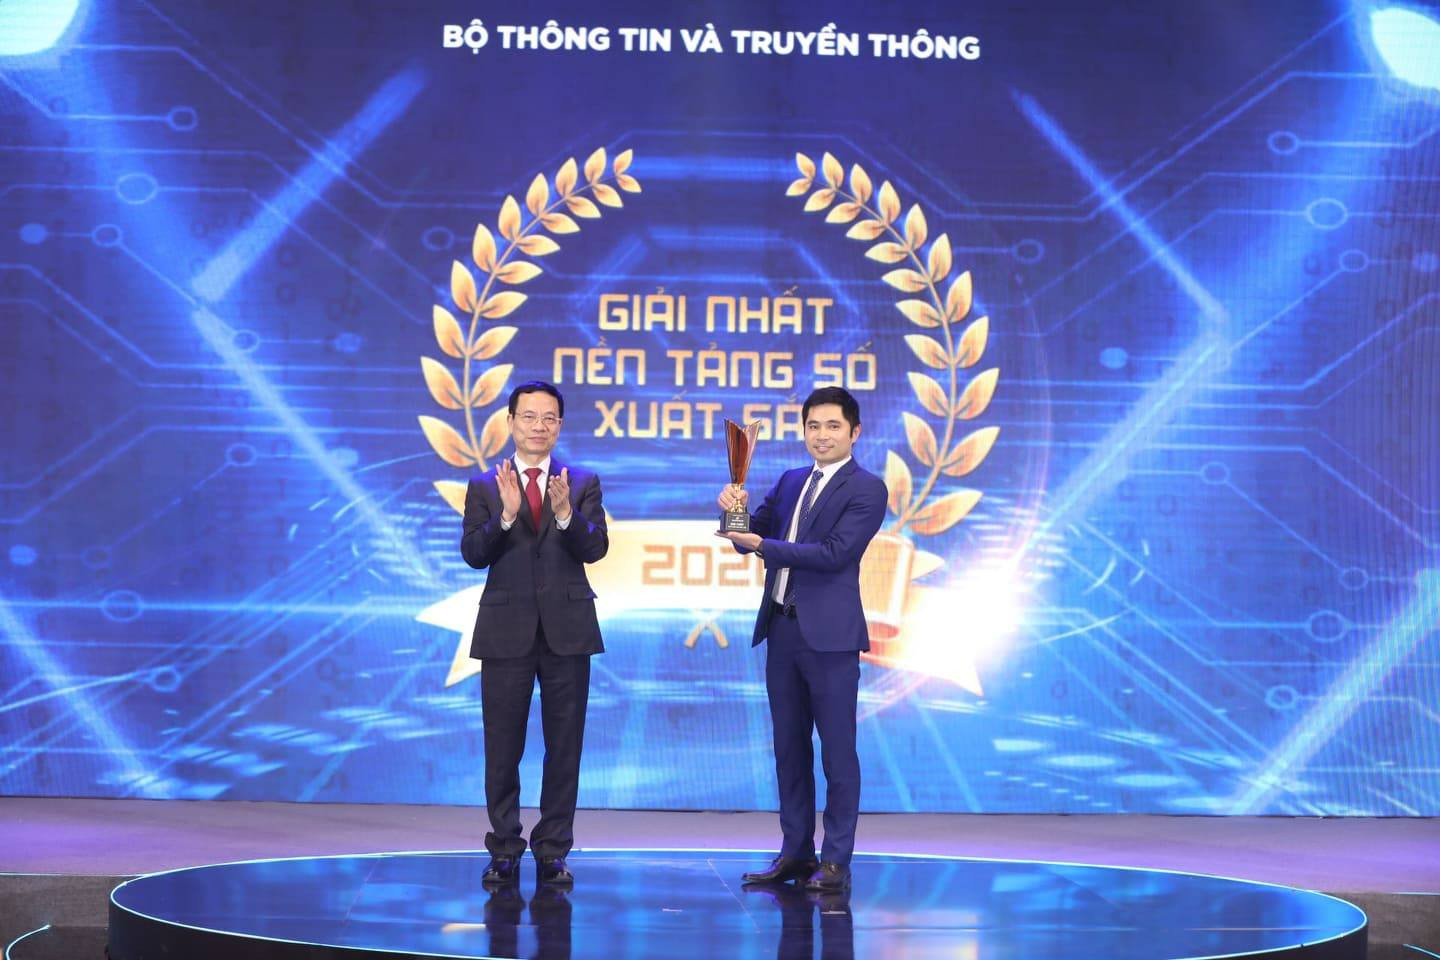 akaBot đạt giải nhất ở hạng mục Sản phẩm số xuất sắc của Giải thưởng Sản phẩm công nghệ số Make in Viet Nam.